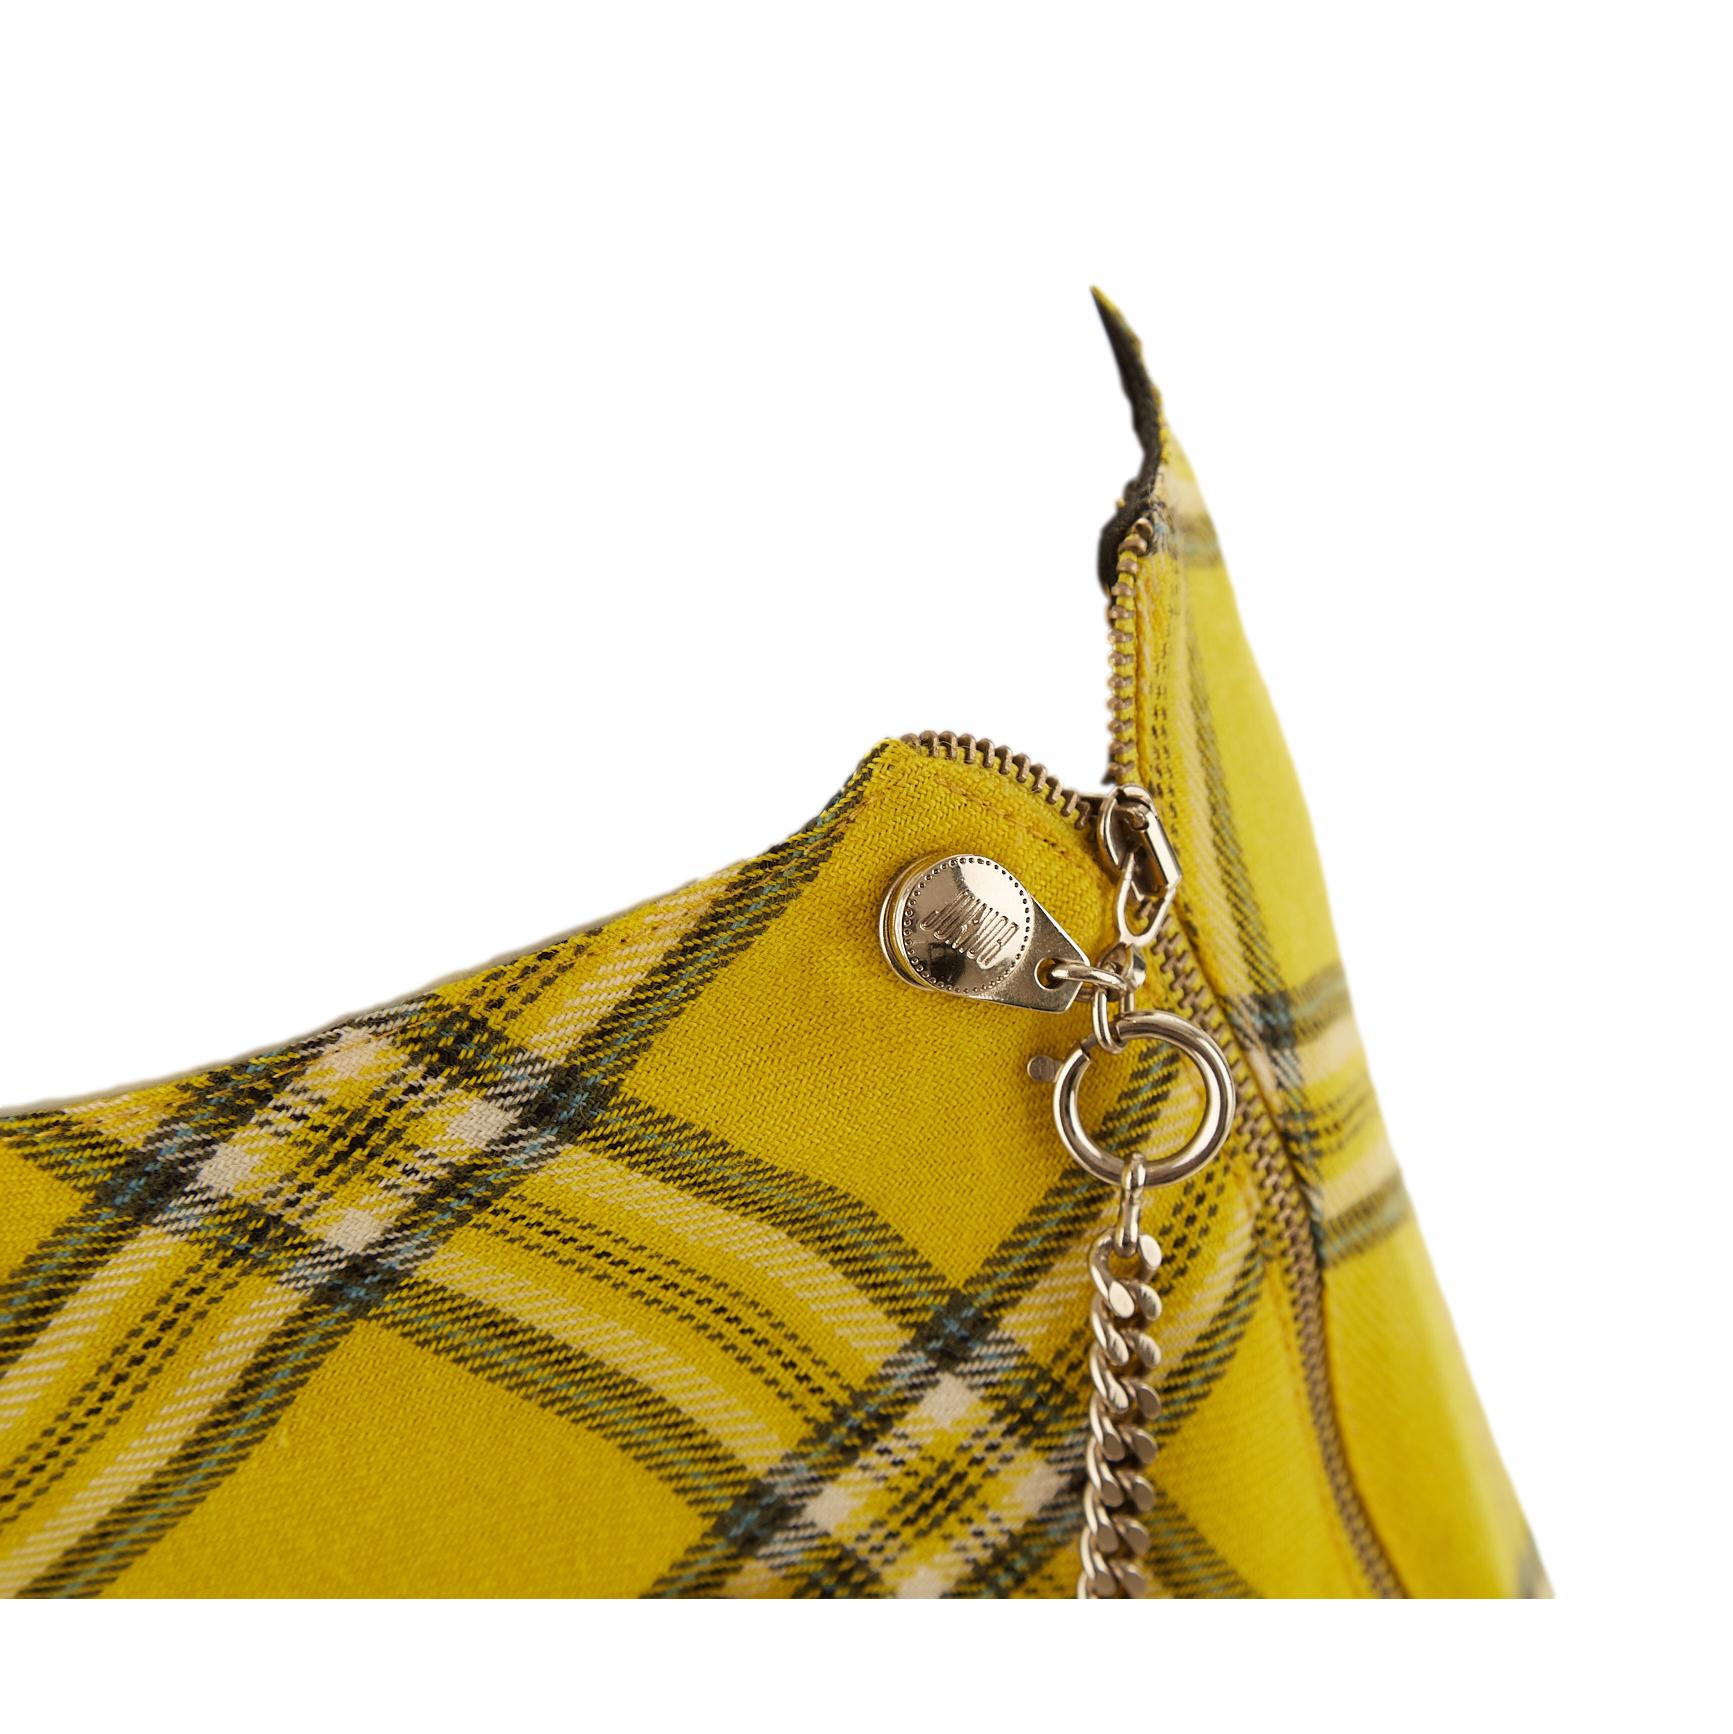 Jean Paul Gaultier Yellow Plaid 'Clueless' Skirt